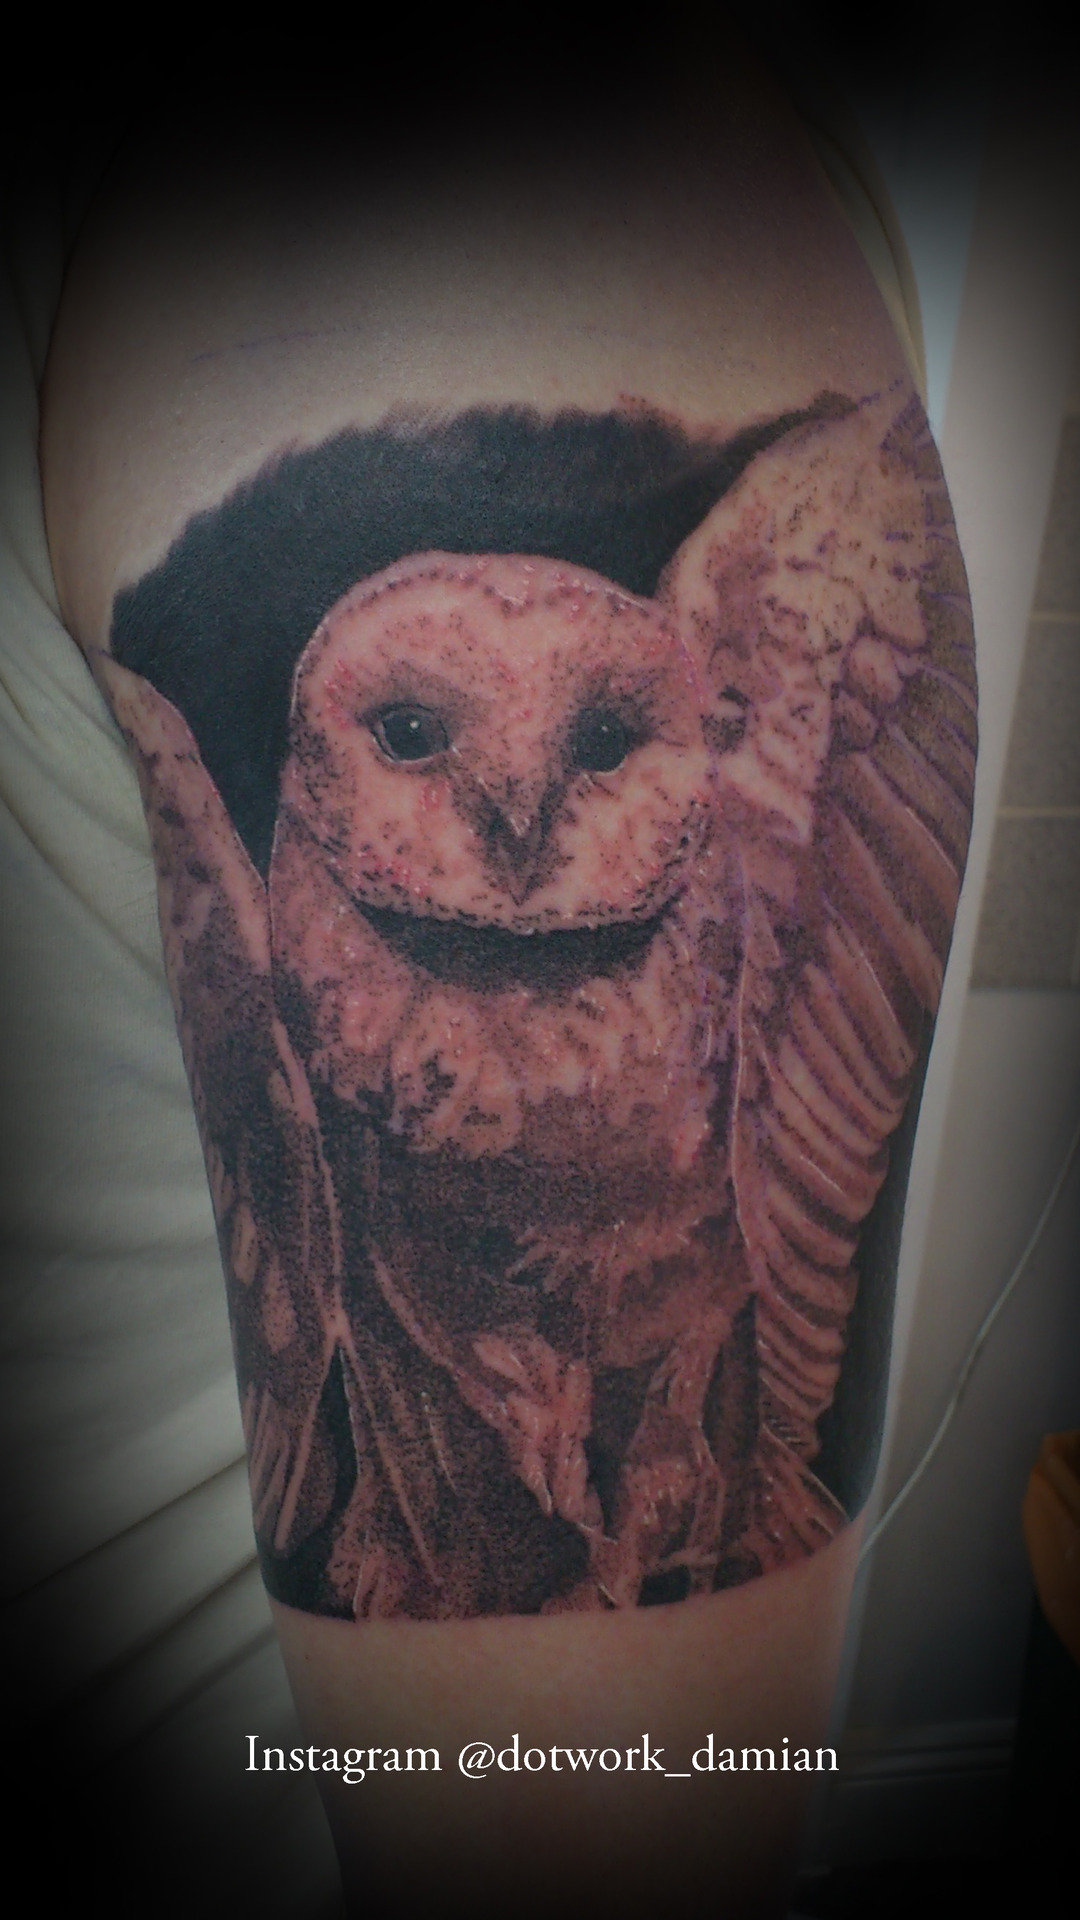 Realistic owl tattoo